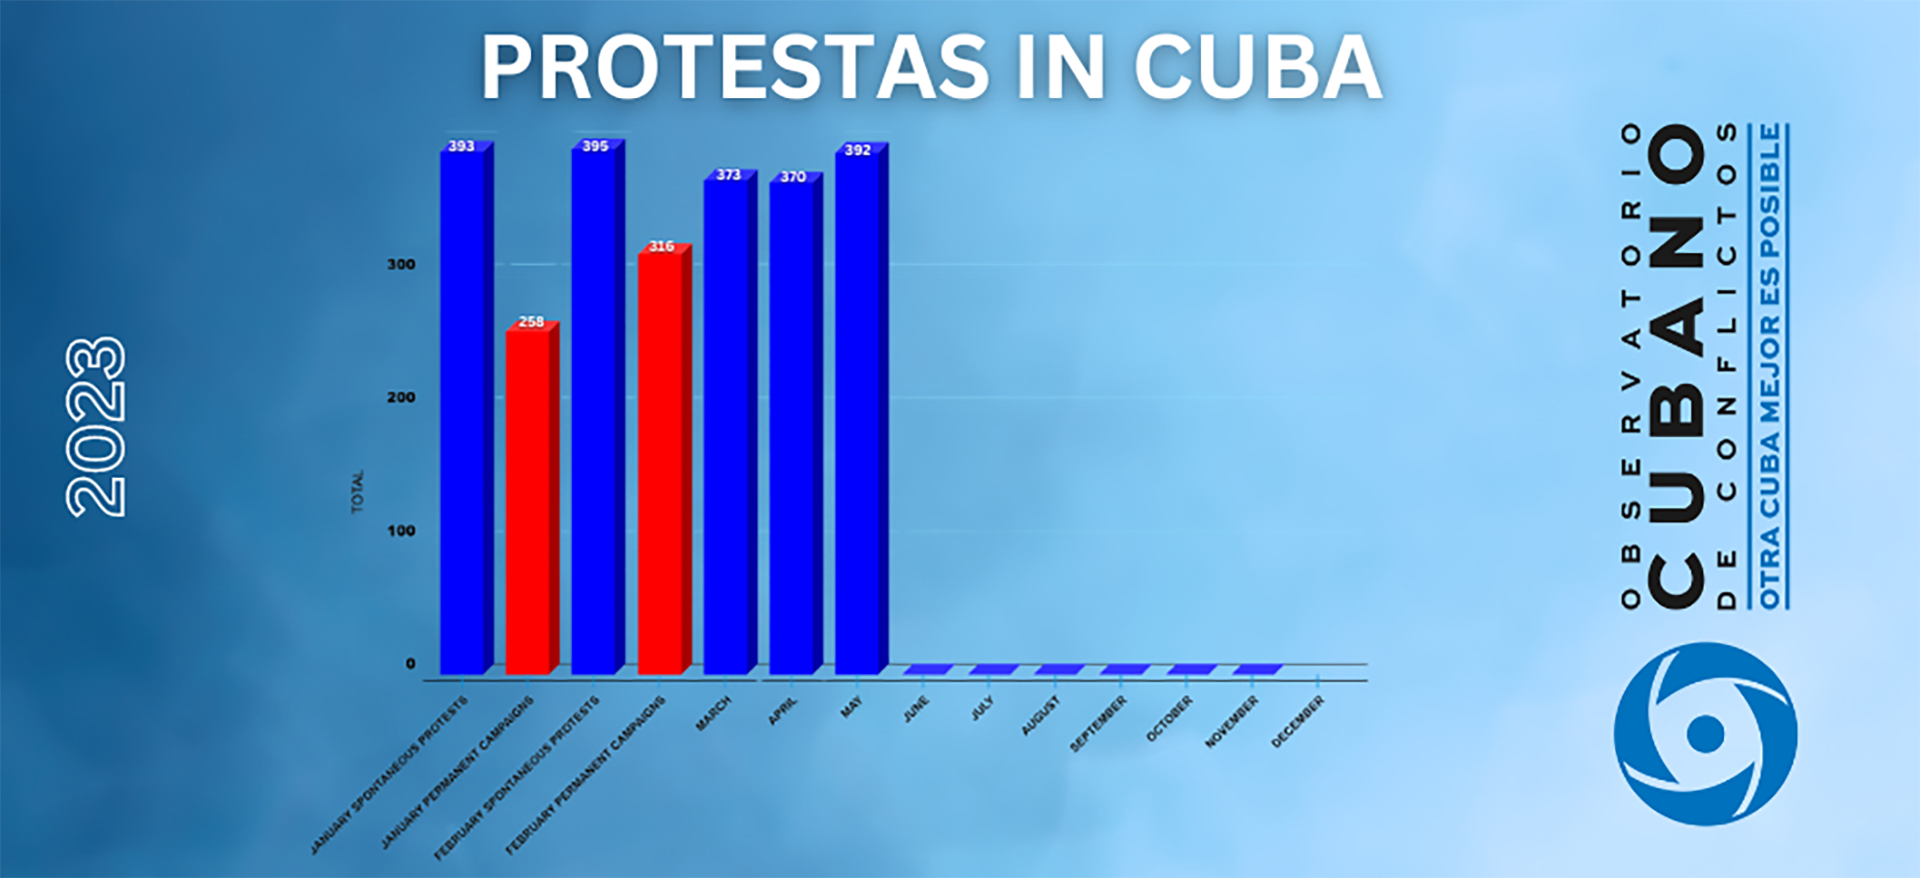 La evolución de las protestas en Cuba (Observatorio Cubano de Conflictos)